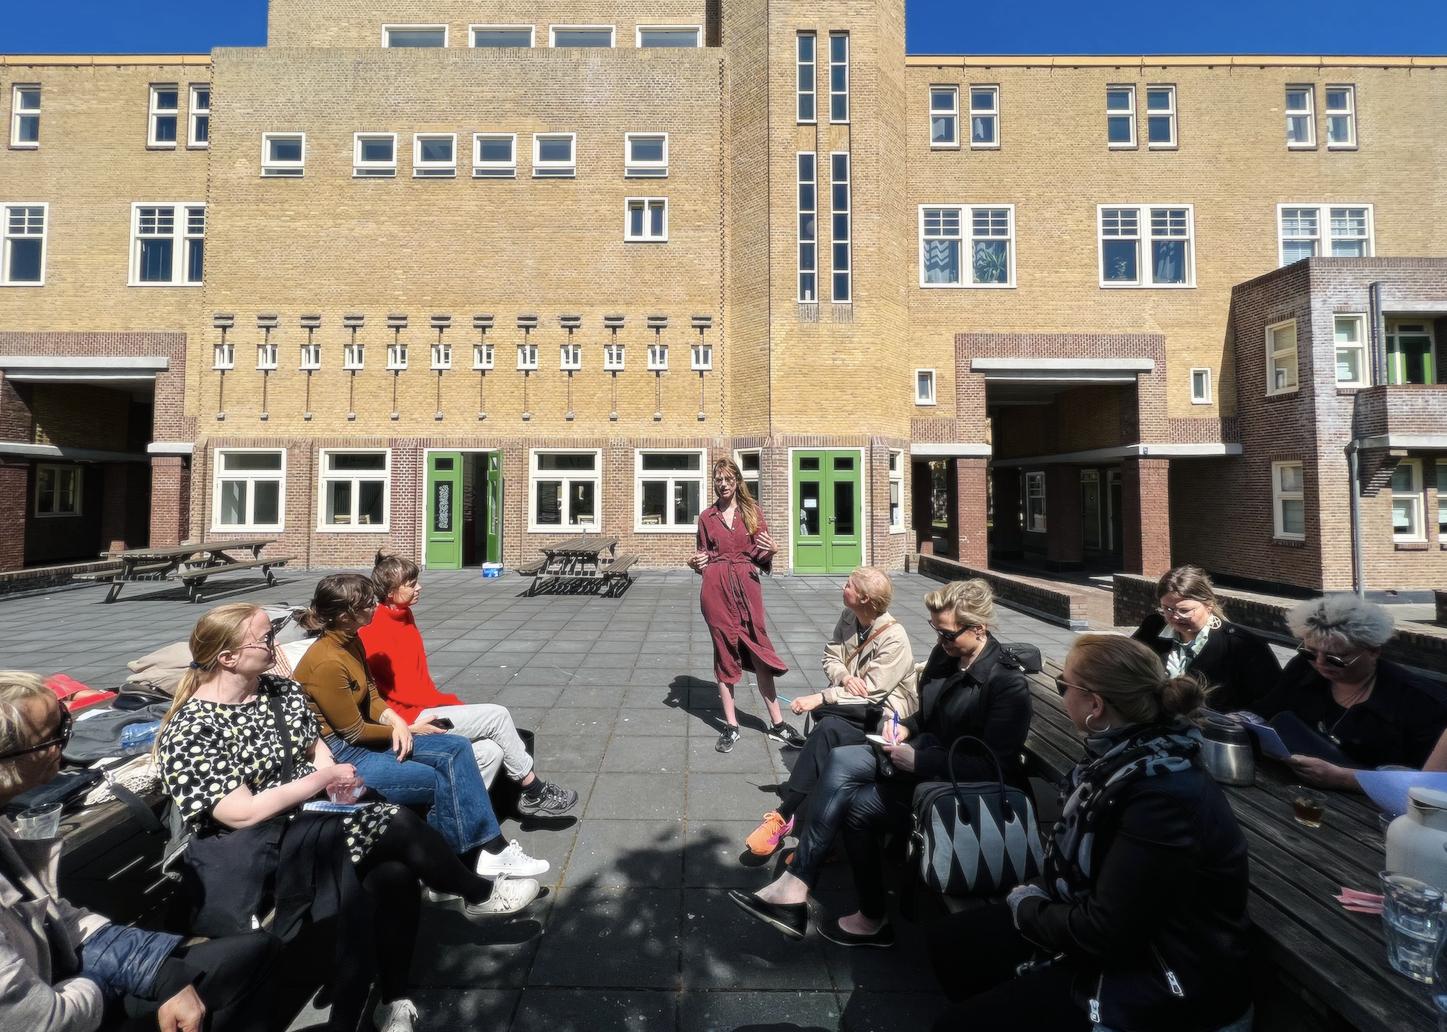 Kuraattori Julia Geerlings seisoo tiilirakennuksen edessä ja ryhmä ihmisiä kuuntelee häntä puhumassa aurinkoisessa säässä.